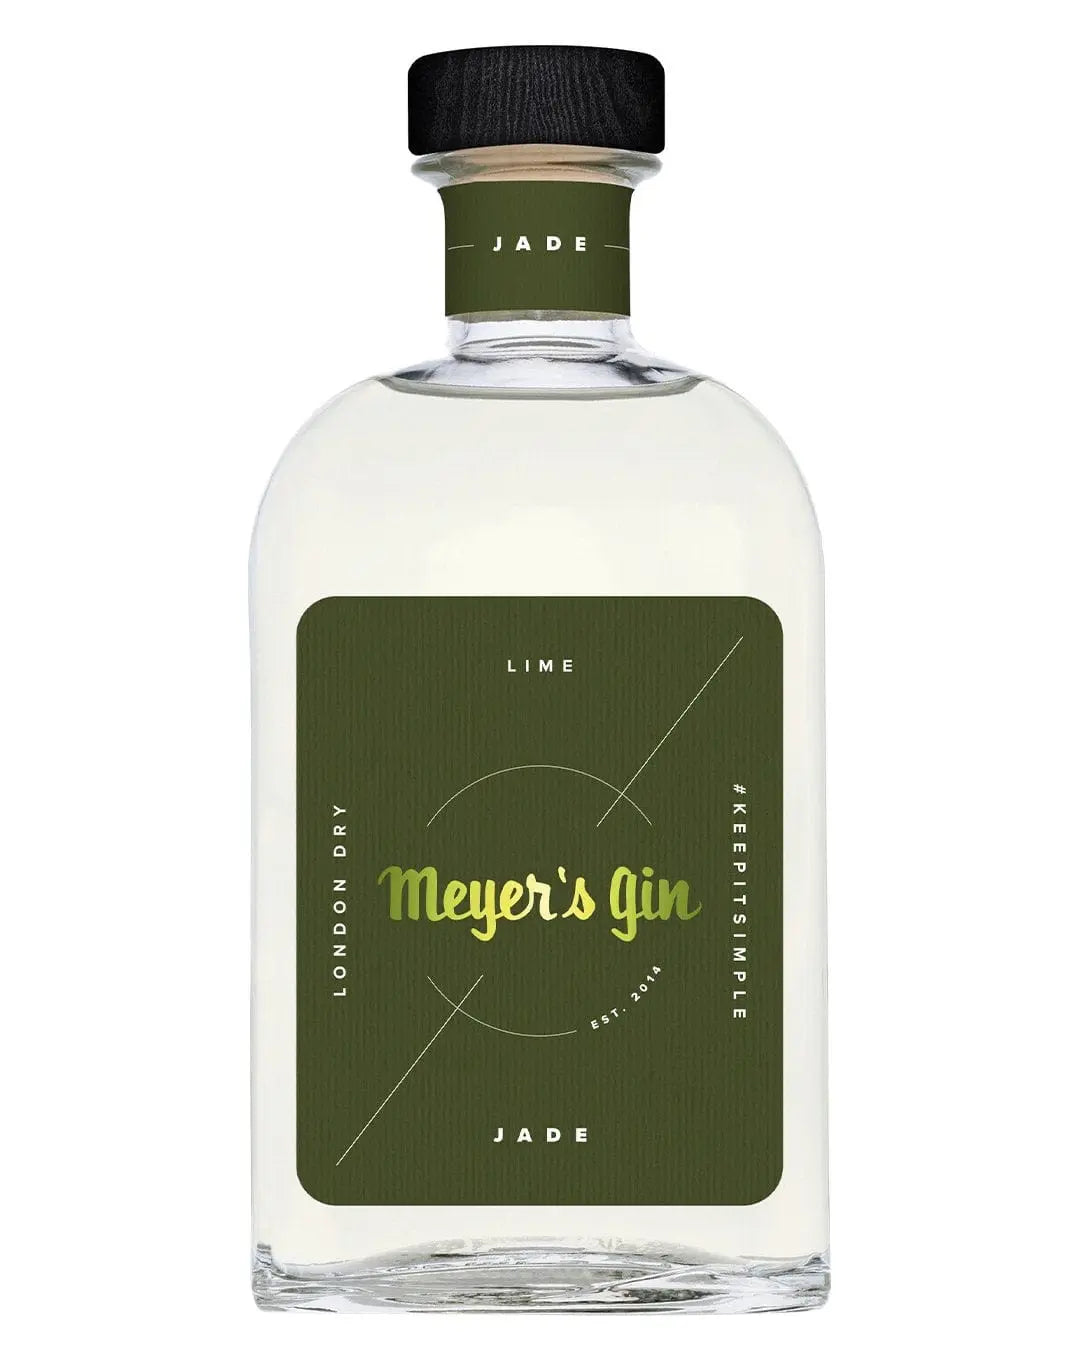 Meyers Gin Jade, 50 cl Gin 5430000063500